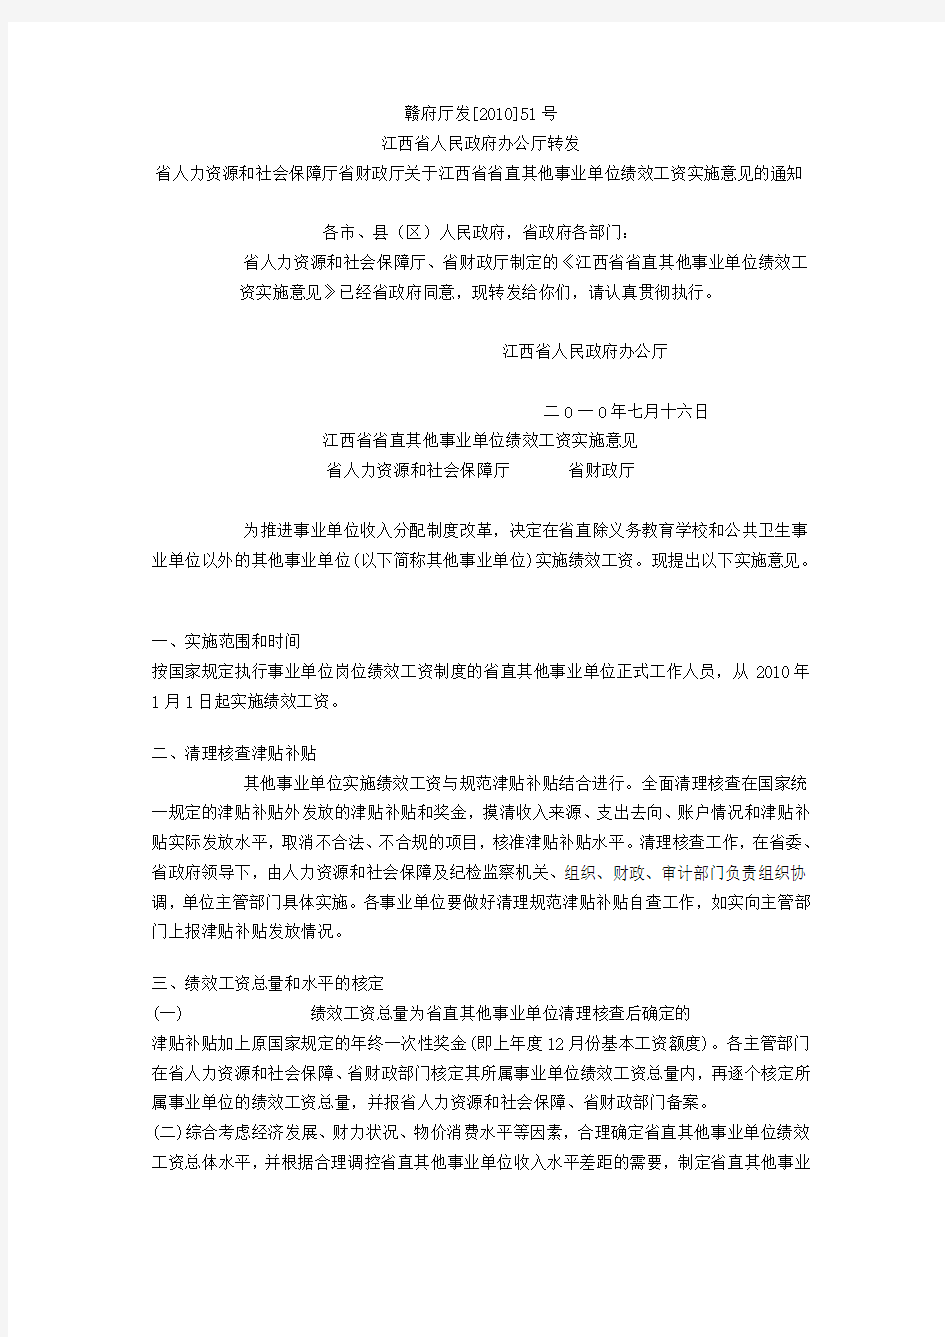 江西省省直其他事业单位绩效工资实施意见